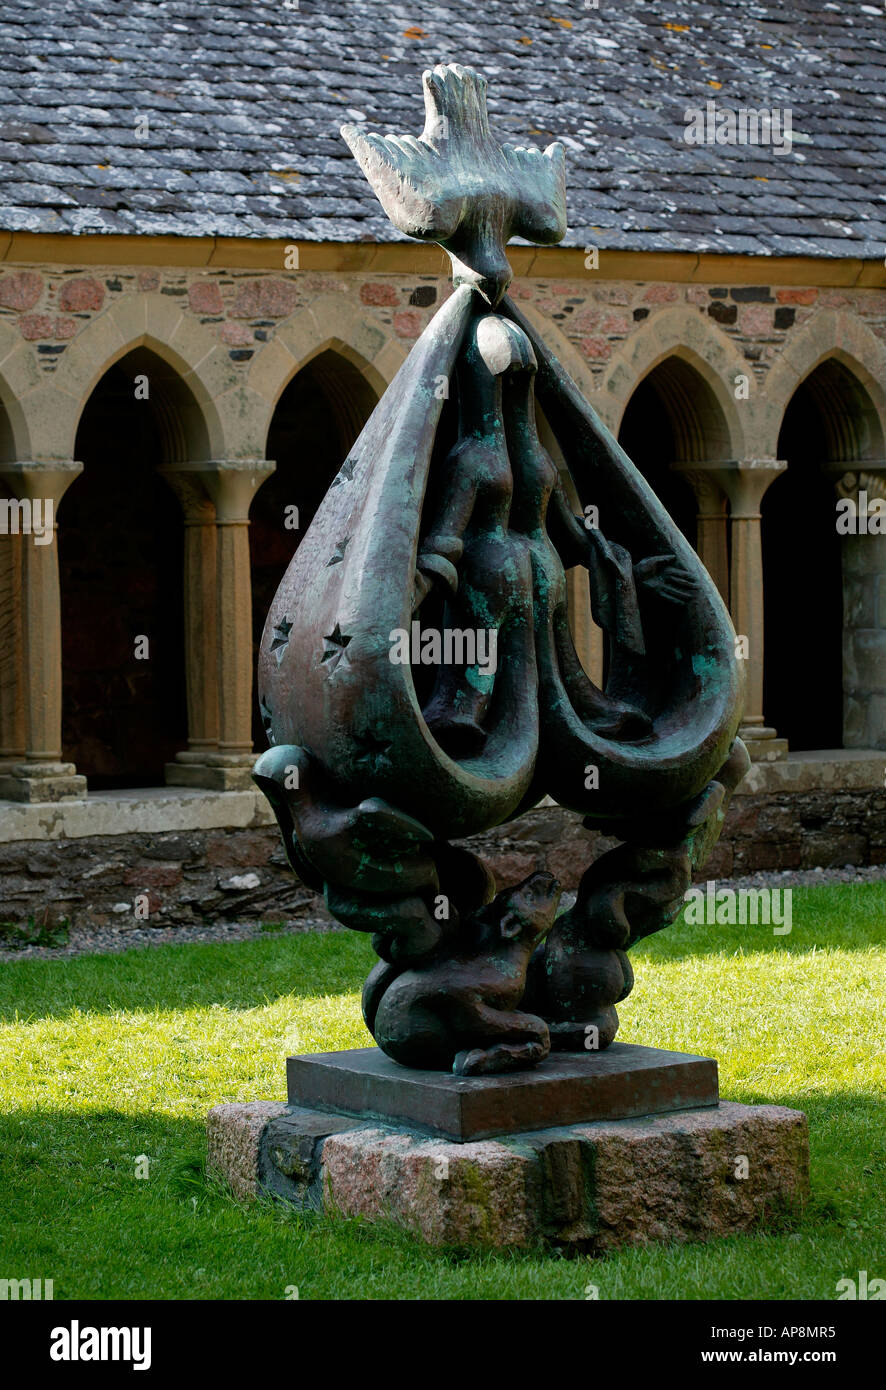 Sculpture en bronze dans les jardins de l'abbaye, à l'île d'Iona, Ecosse UK Europe Banque D'Images